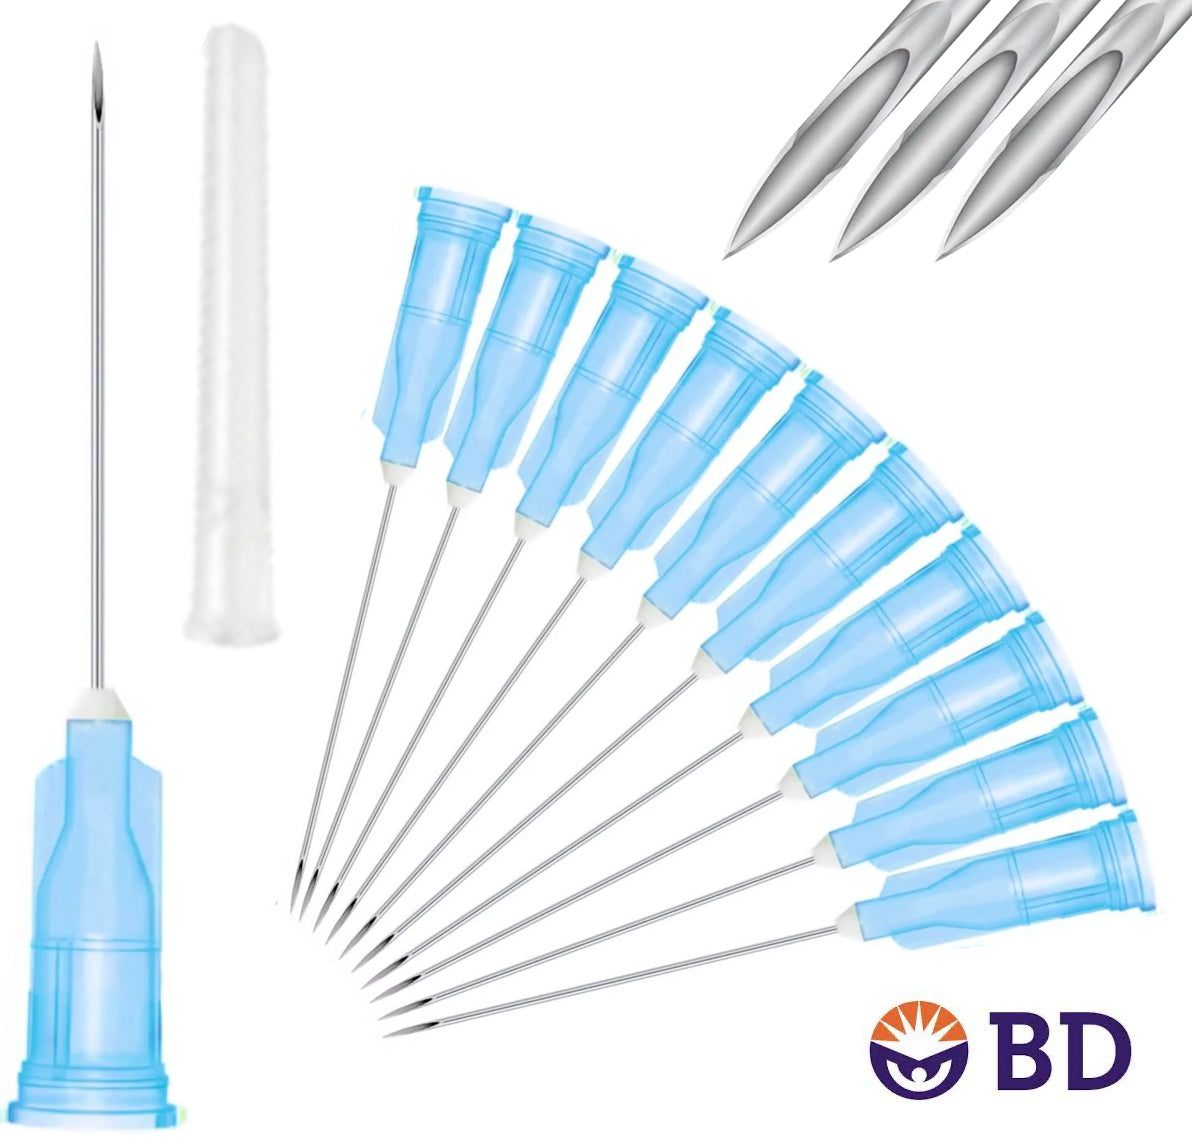 BD 25G x 1.5" Medical Needle (10pk)